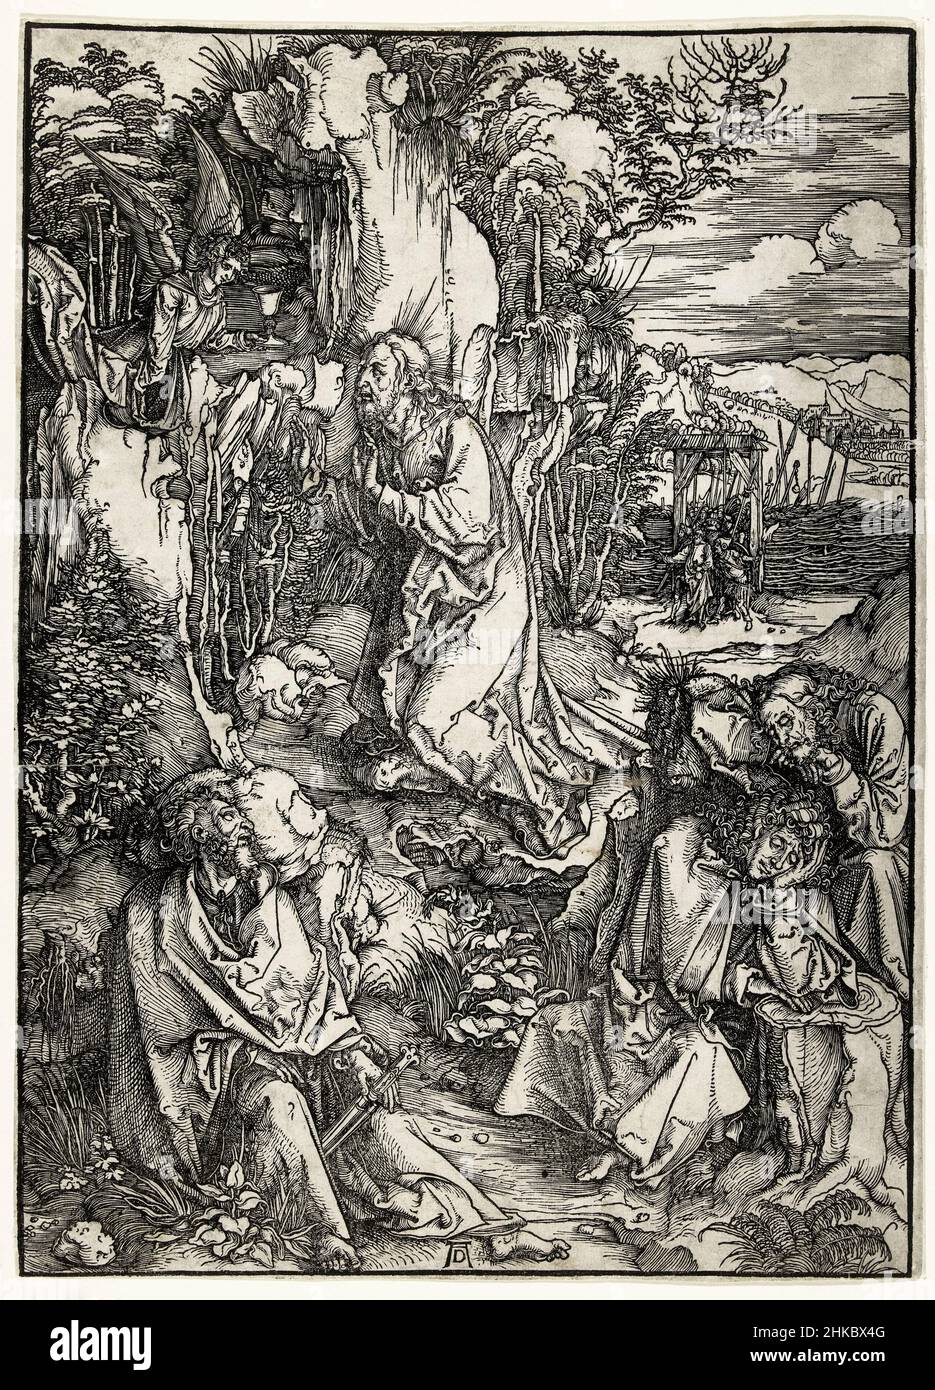 Cristo en el Monte de los Olivos, grabado en madera por Albrecht Durer, 1496-1497 Foto de stock